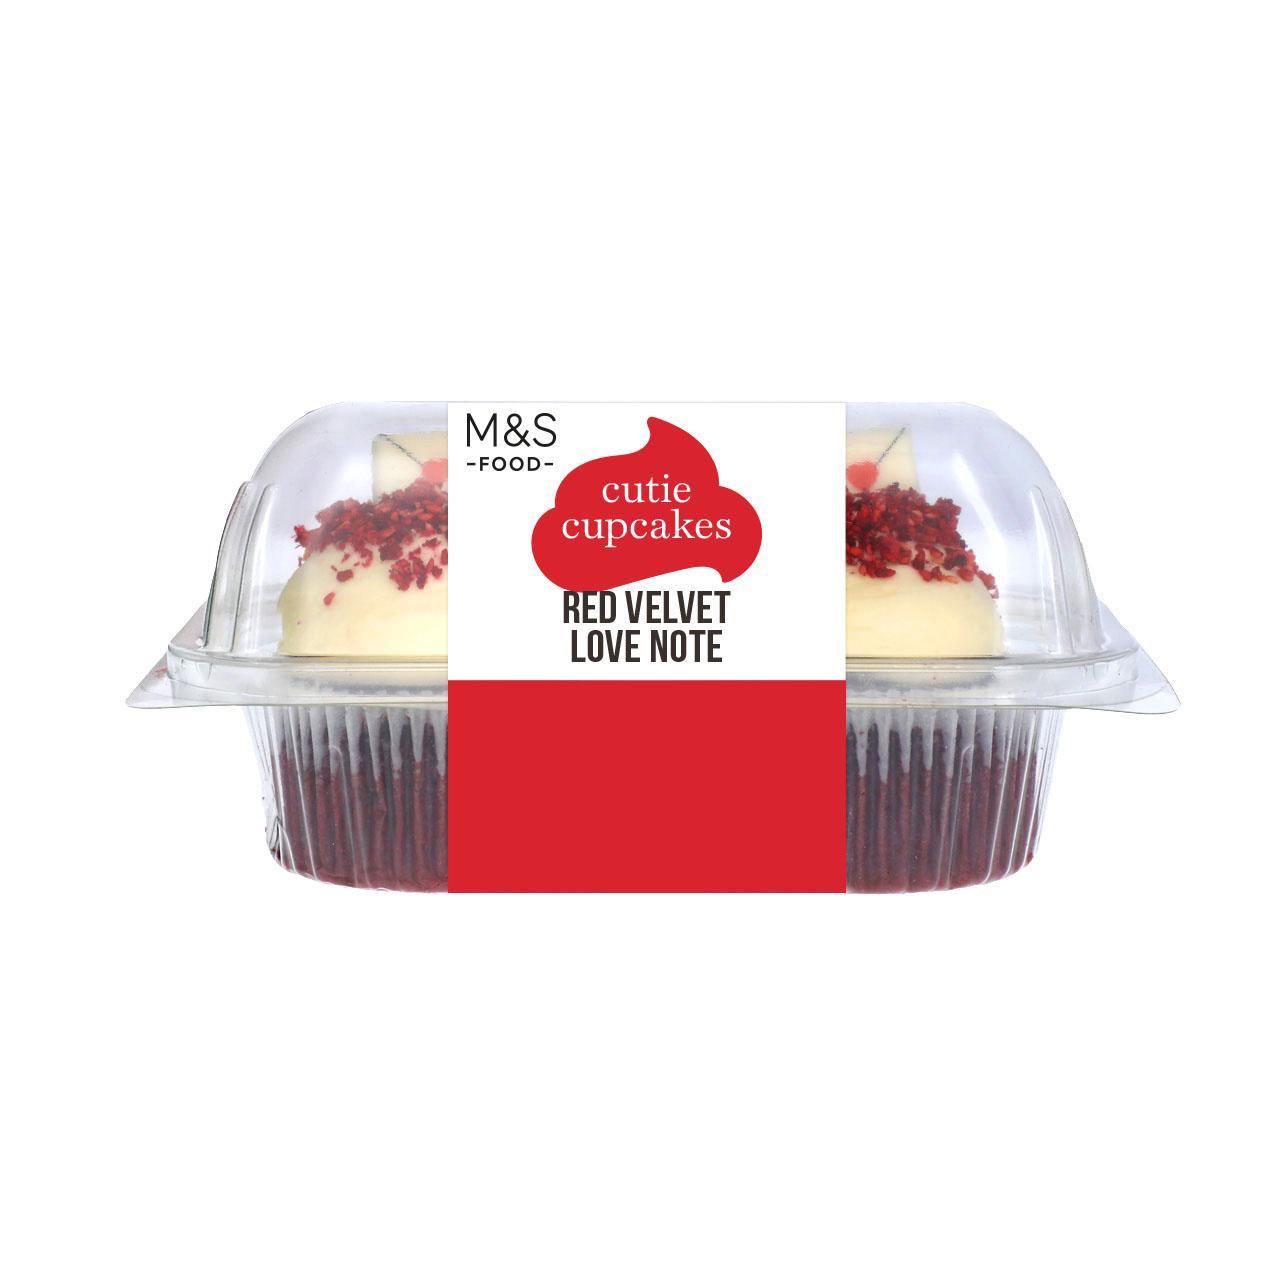 M&S Red Velvet Cutie Cupcakes